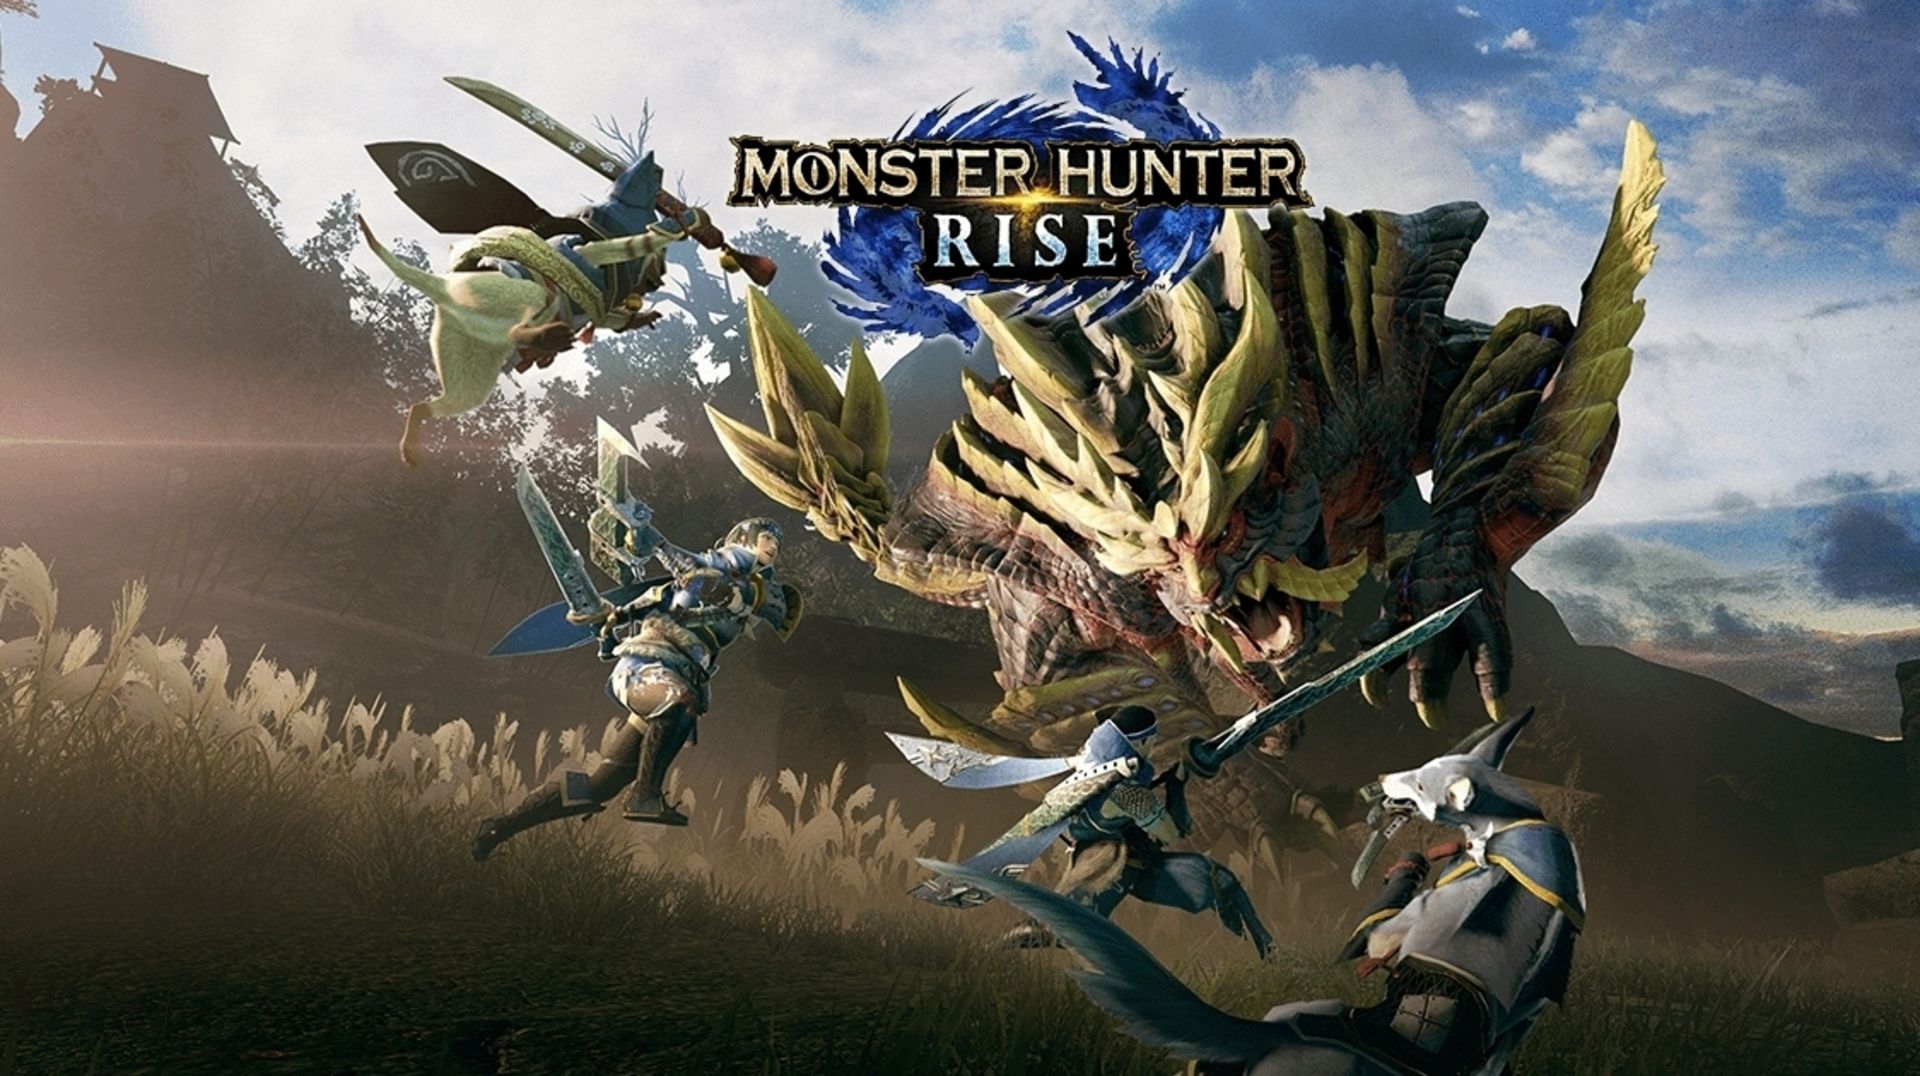 Monster Hinter Rise dostaje darmowe DLC